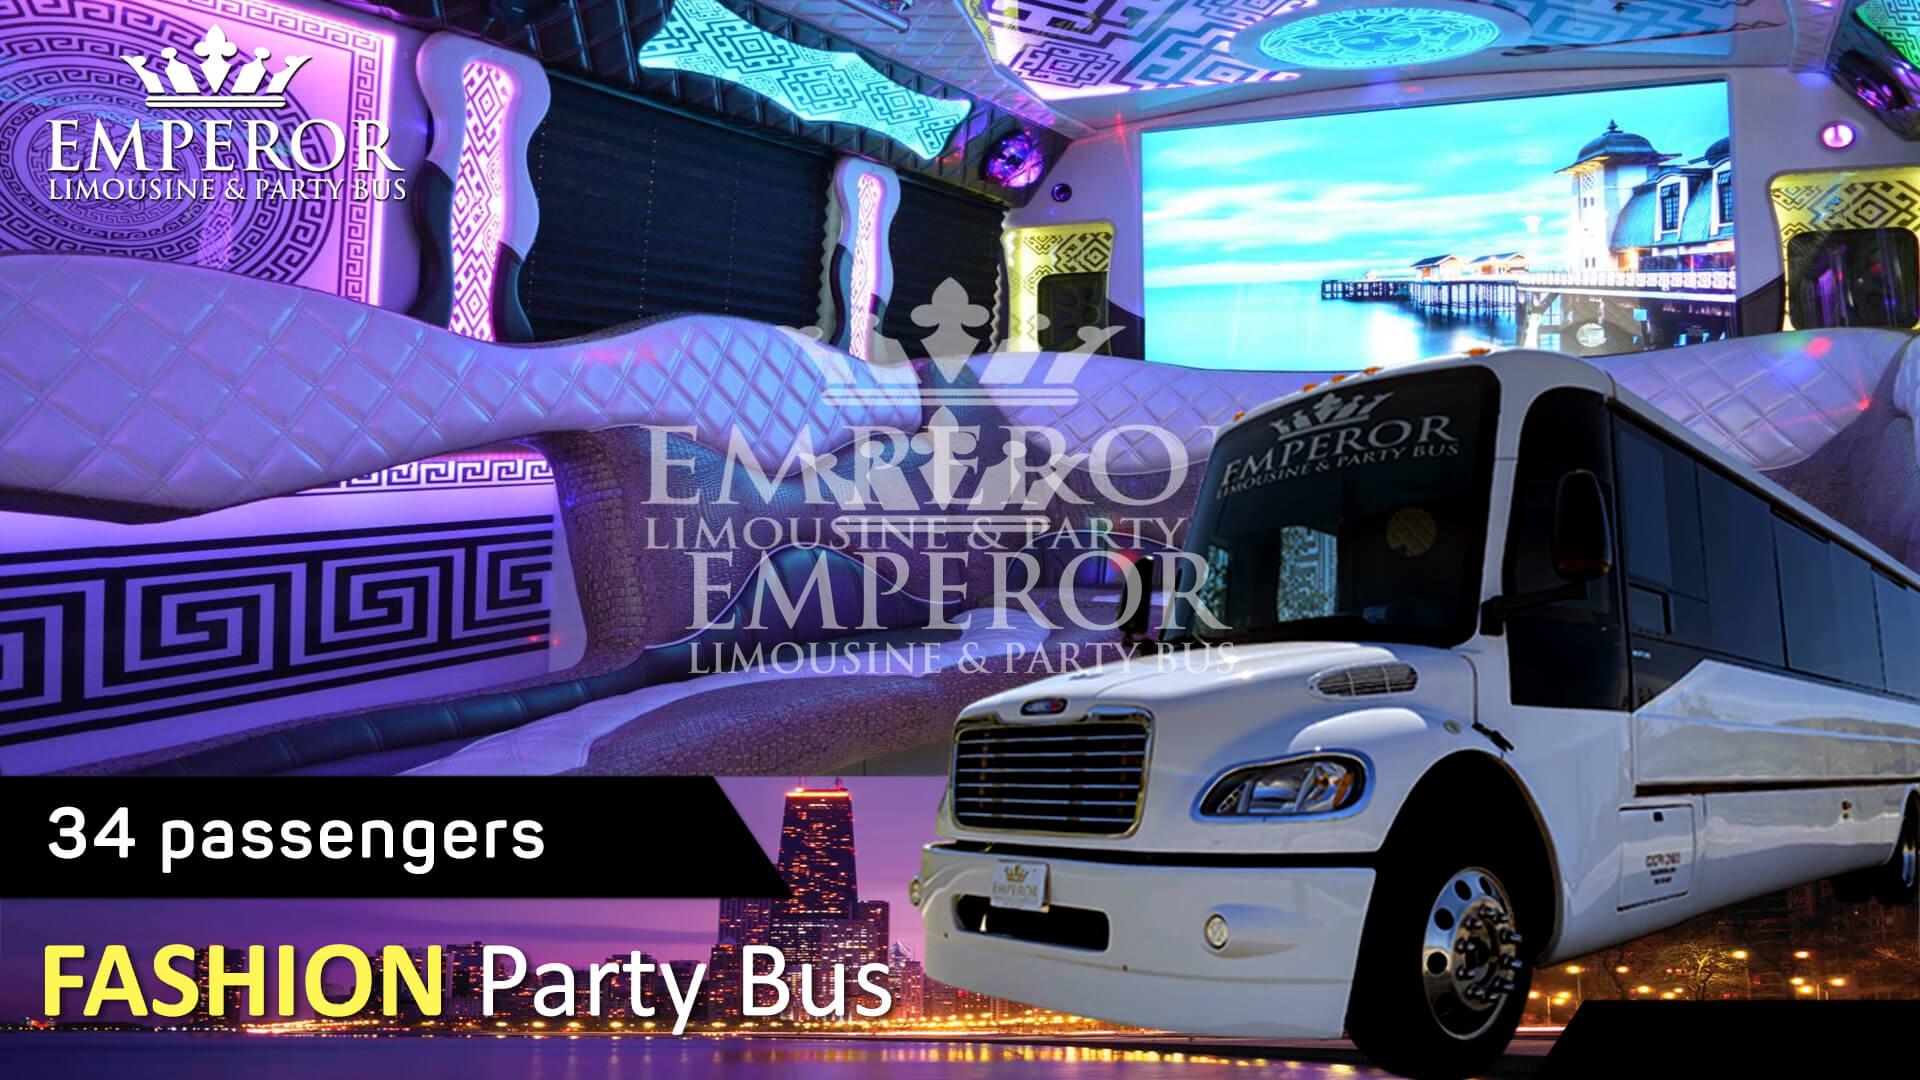 Party bus service in Berwyn - Fashion Edition